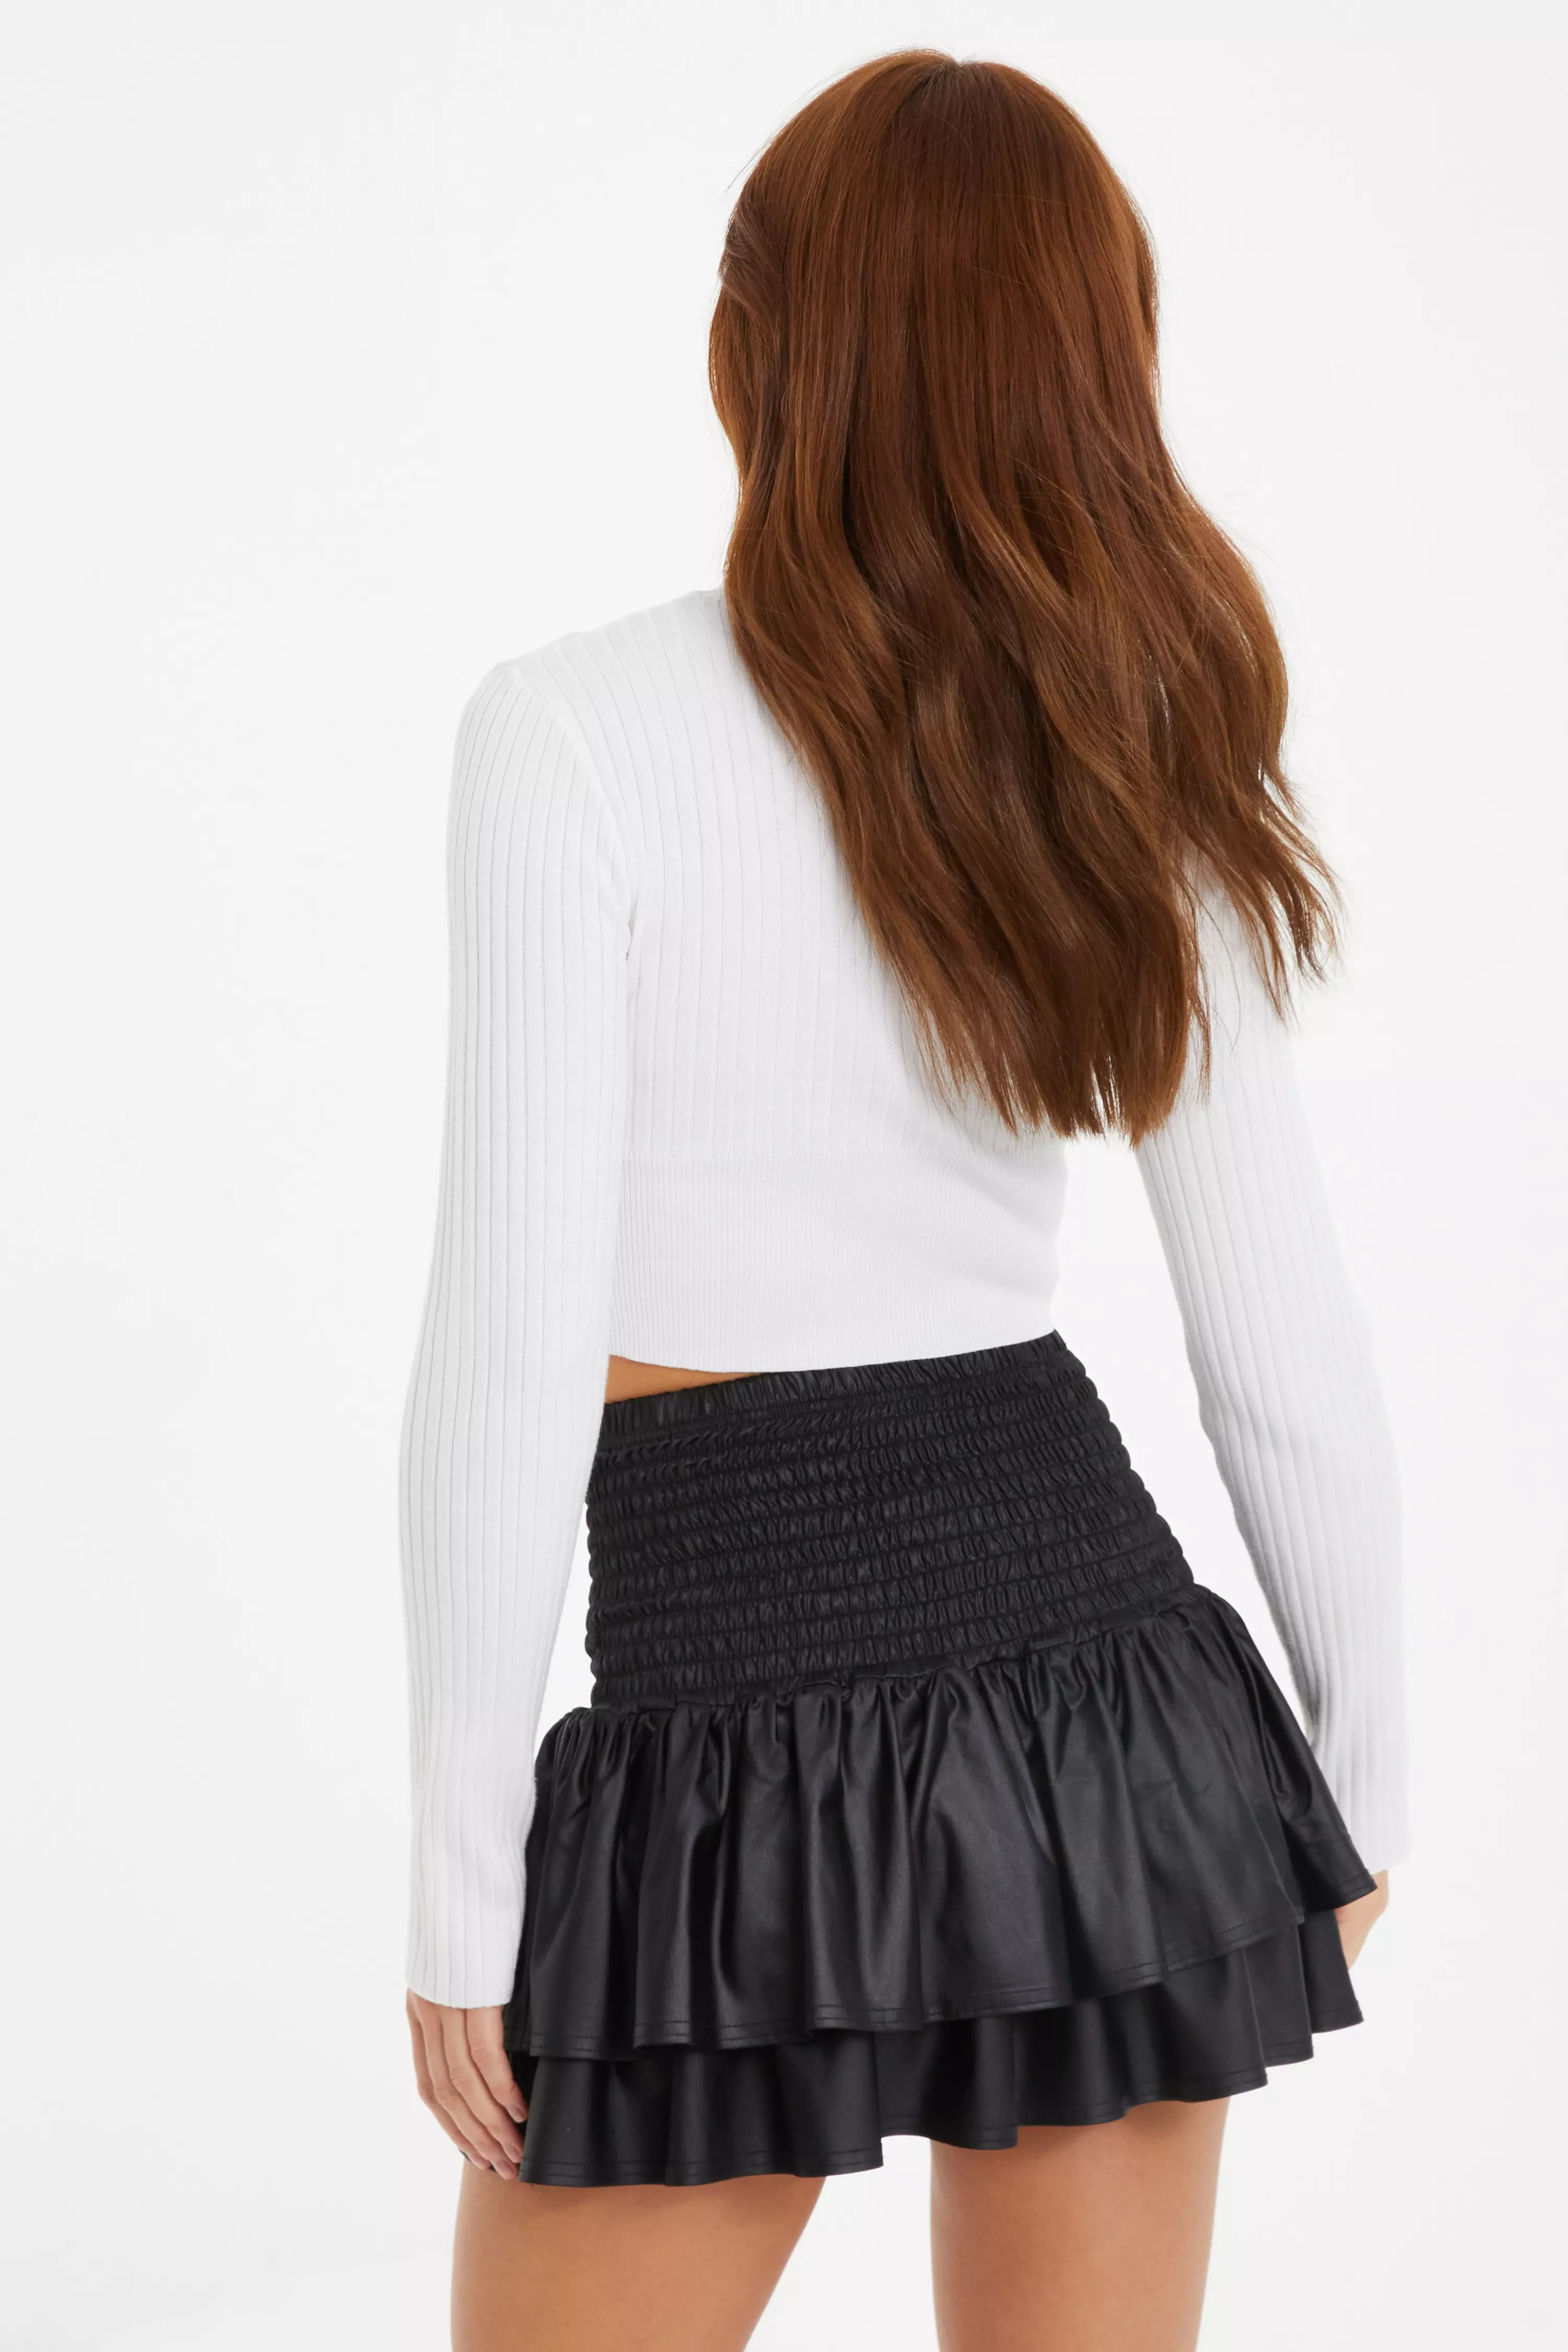 Black Faux Leather Frill Mini Skirt